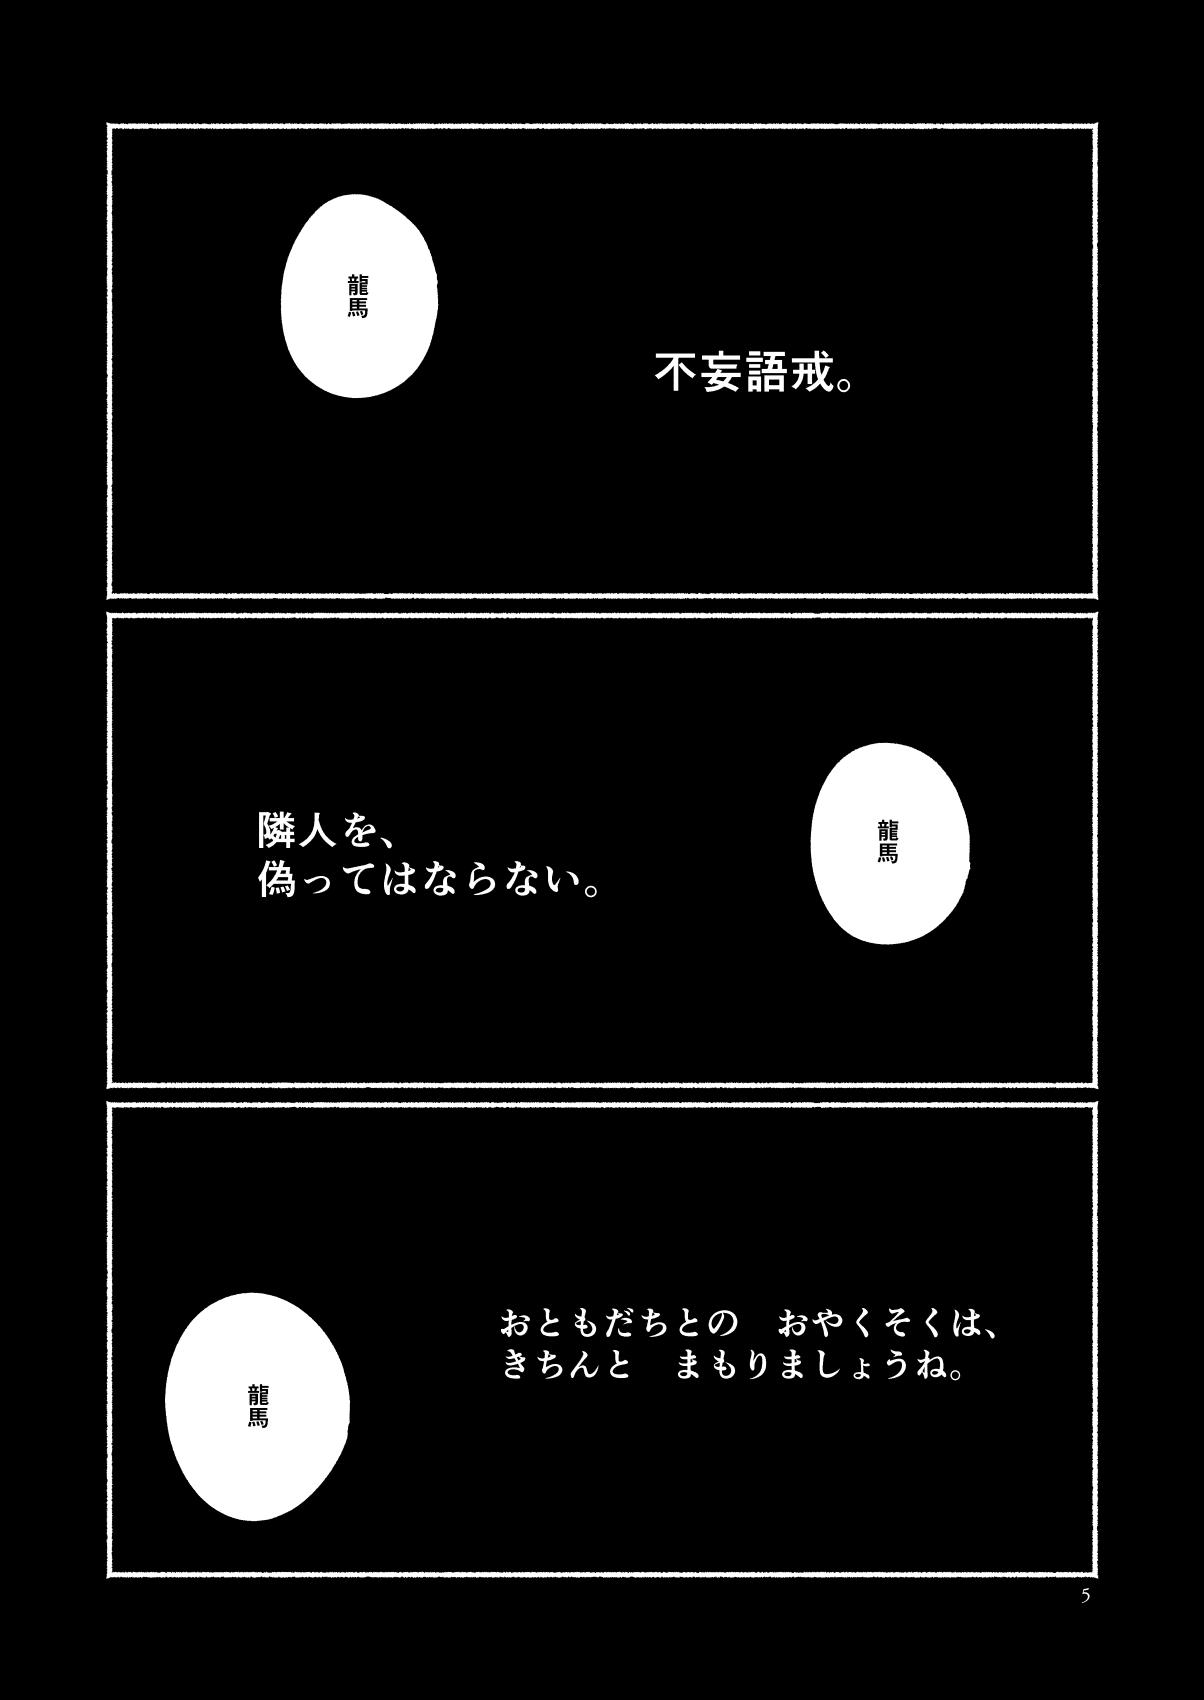 Chat Chigiri no Yume ni Ame no Furu - Fate grand order Tan - Page 5